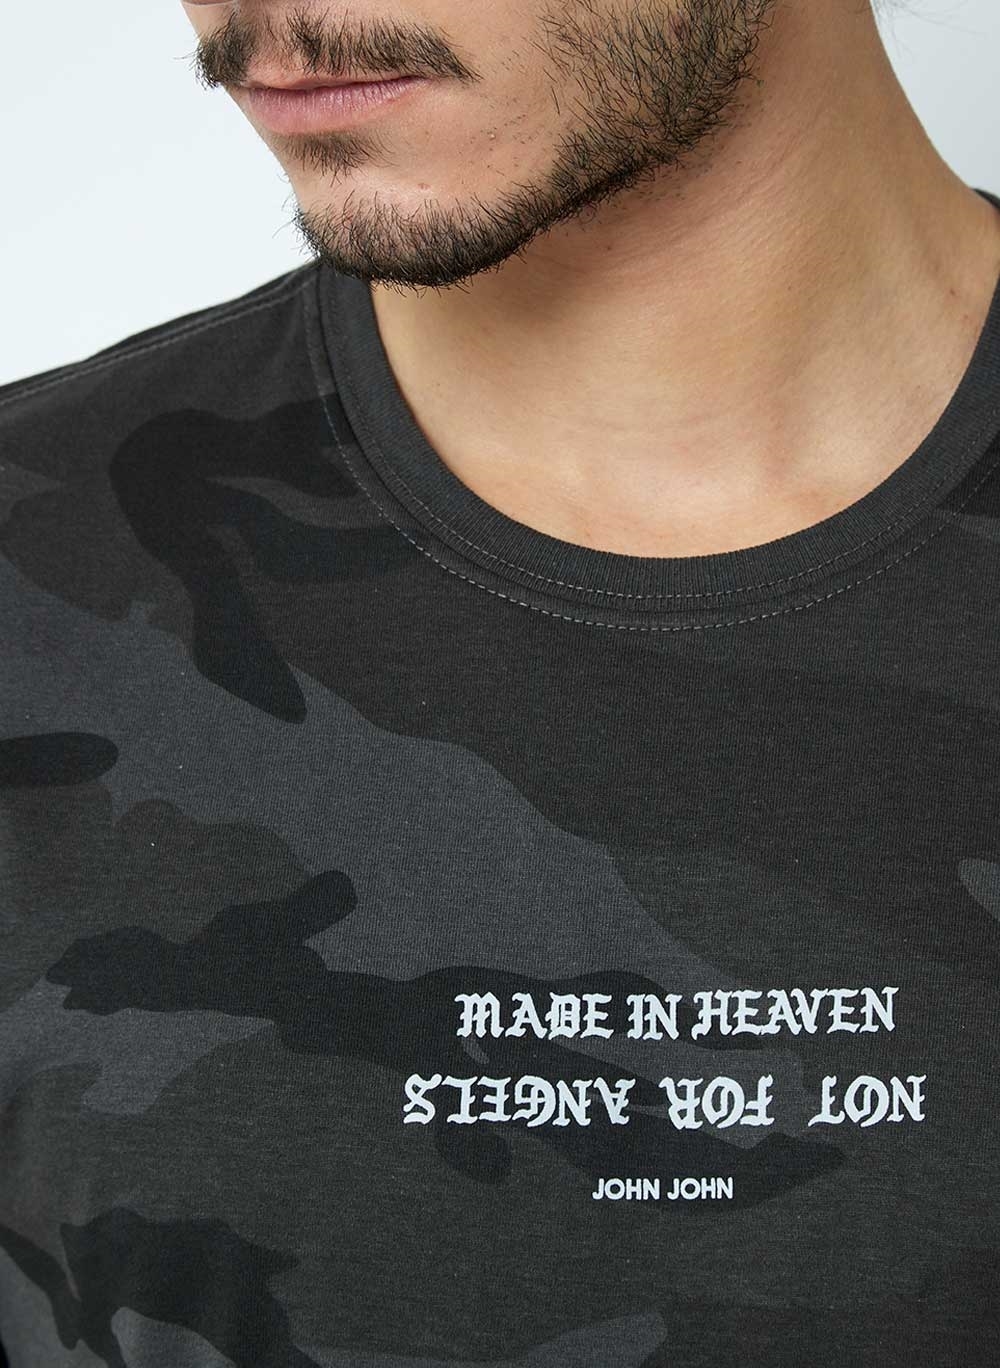 Camiseta John John Made In Heaven Cinza - Compre Agora